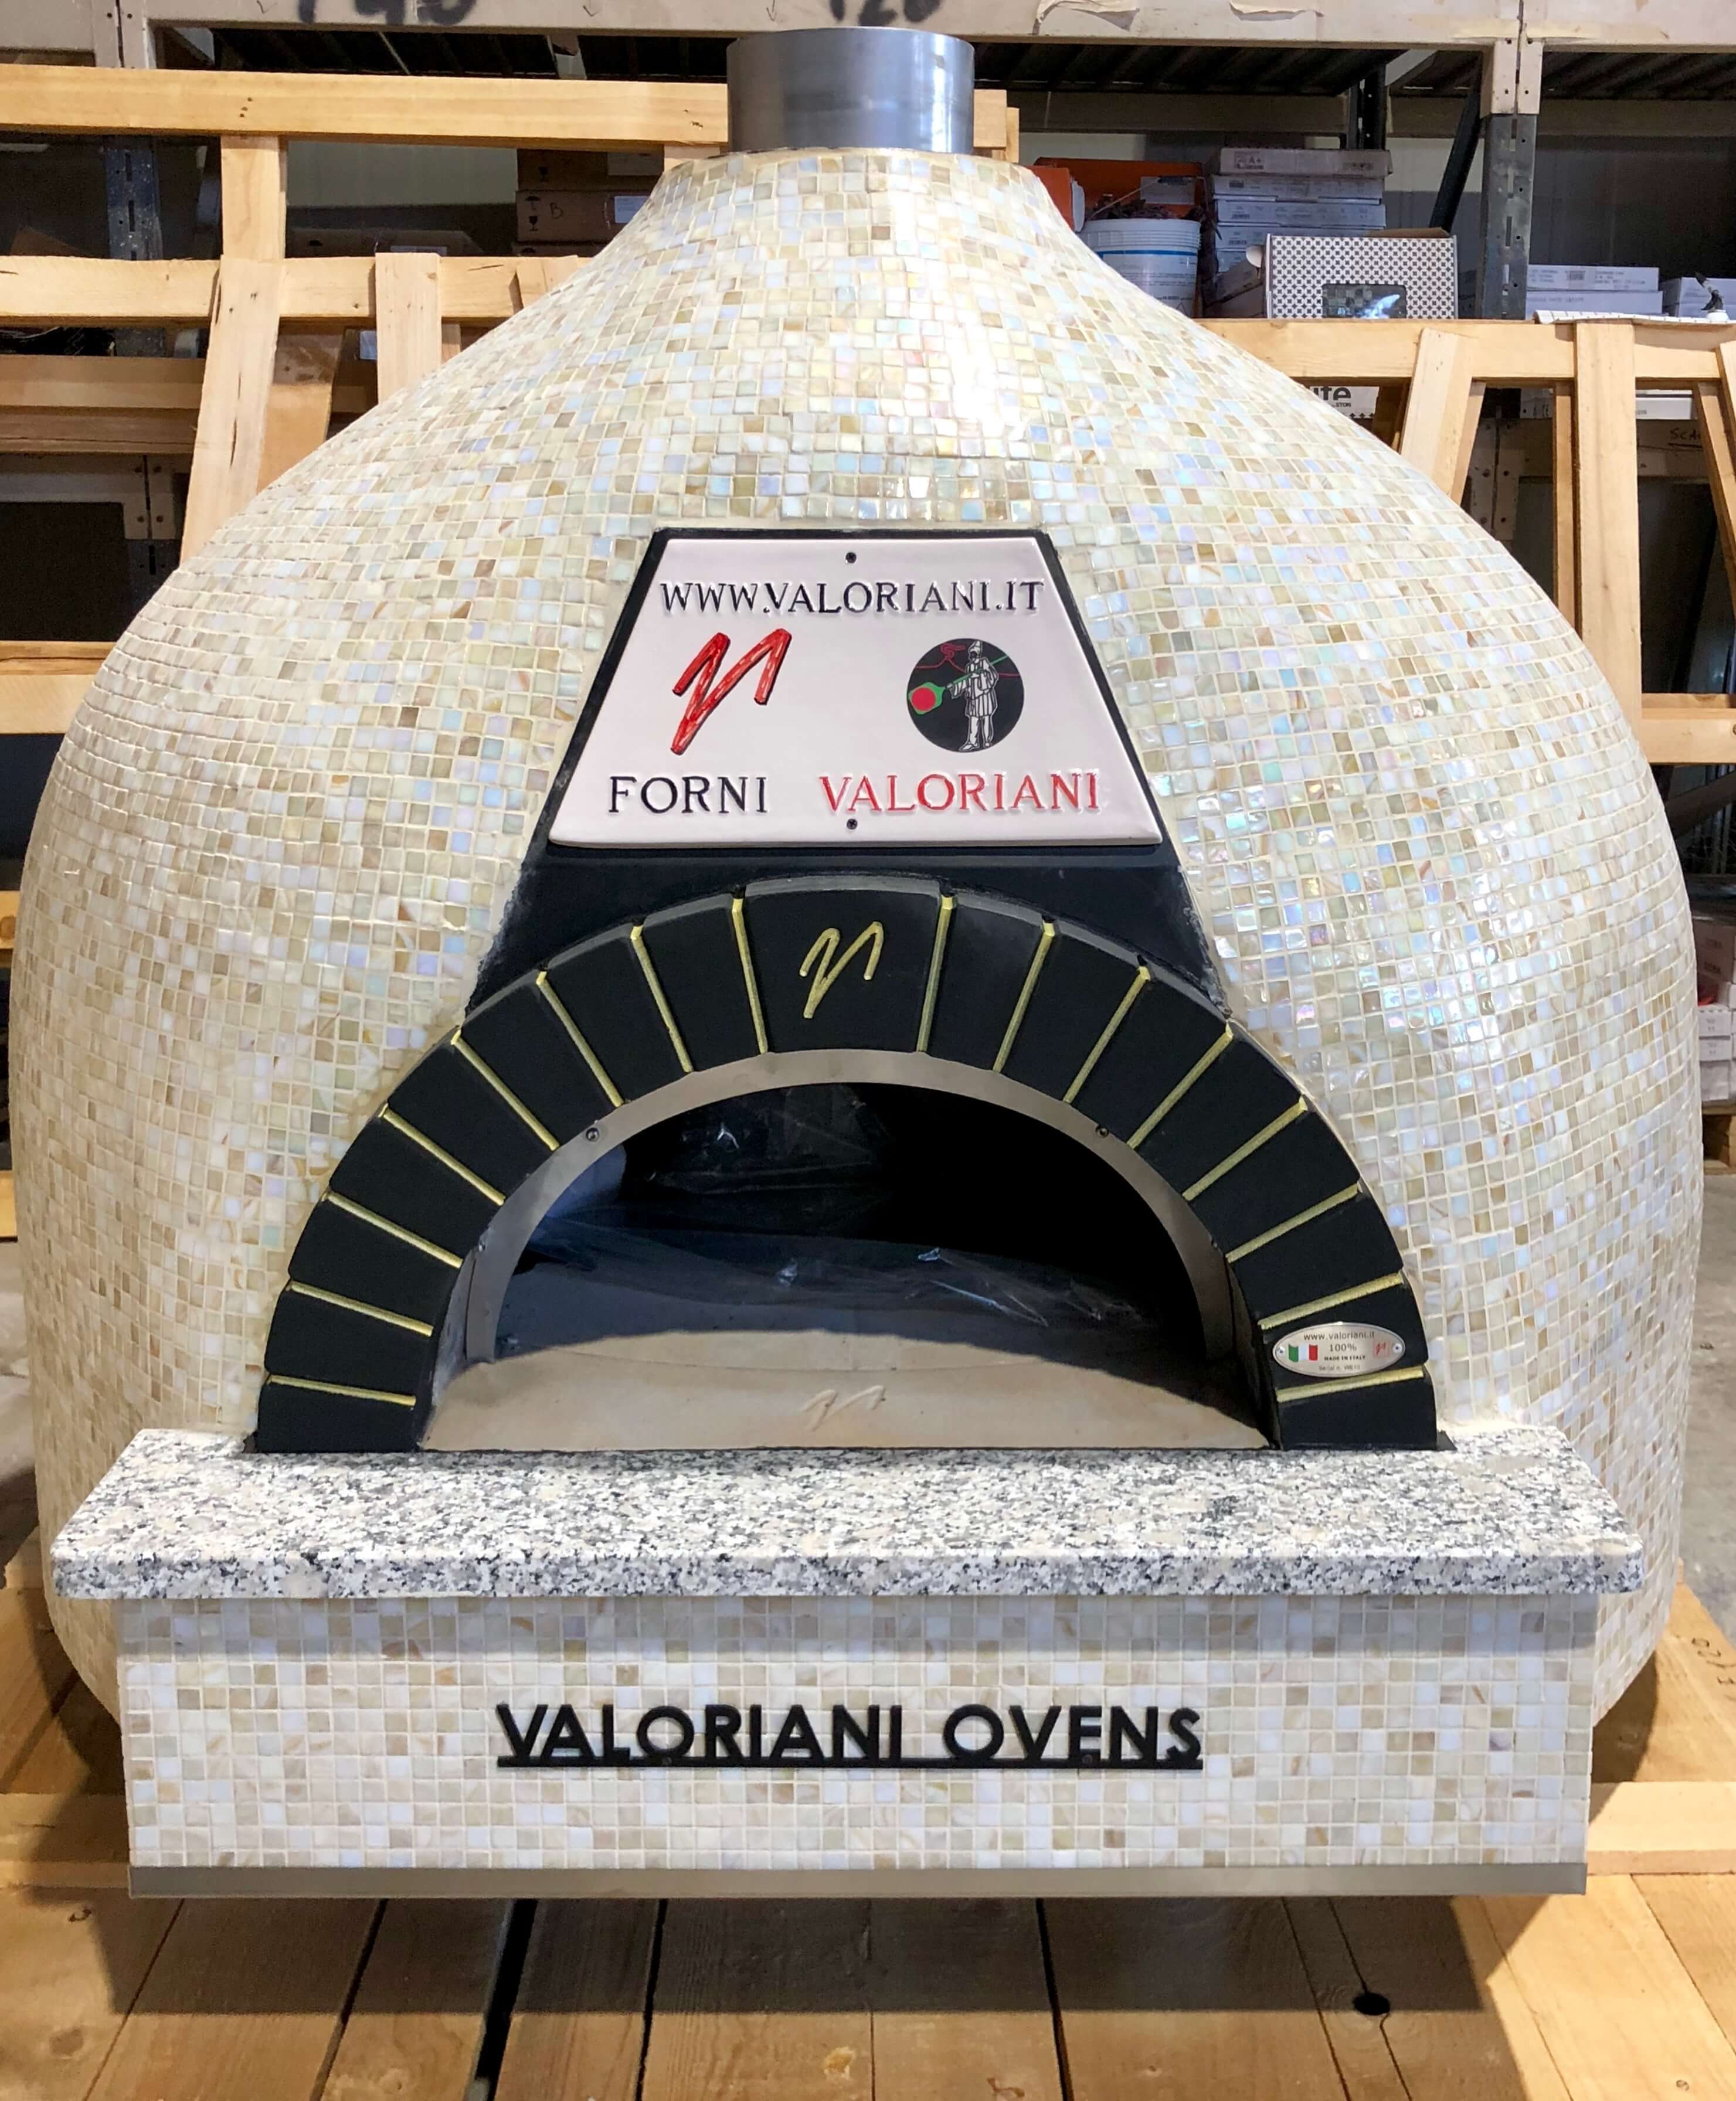 Holzbackofen Valoriani Rotativo: rotierender Pizzaofen, quadratisch, 110cm Durchmesser, für Gastro